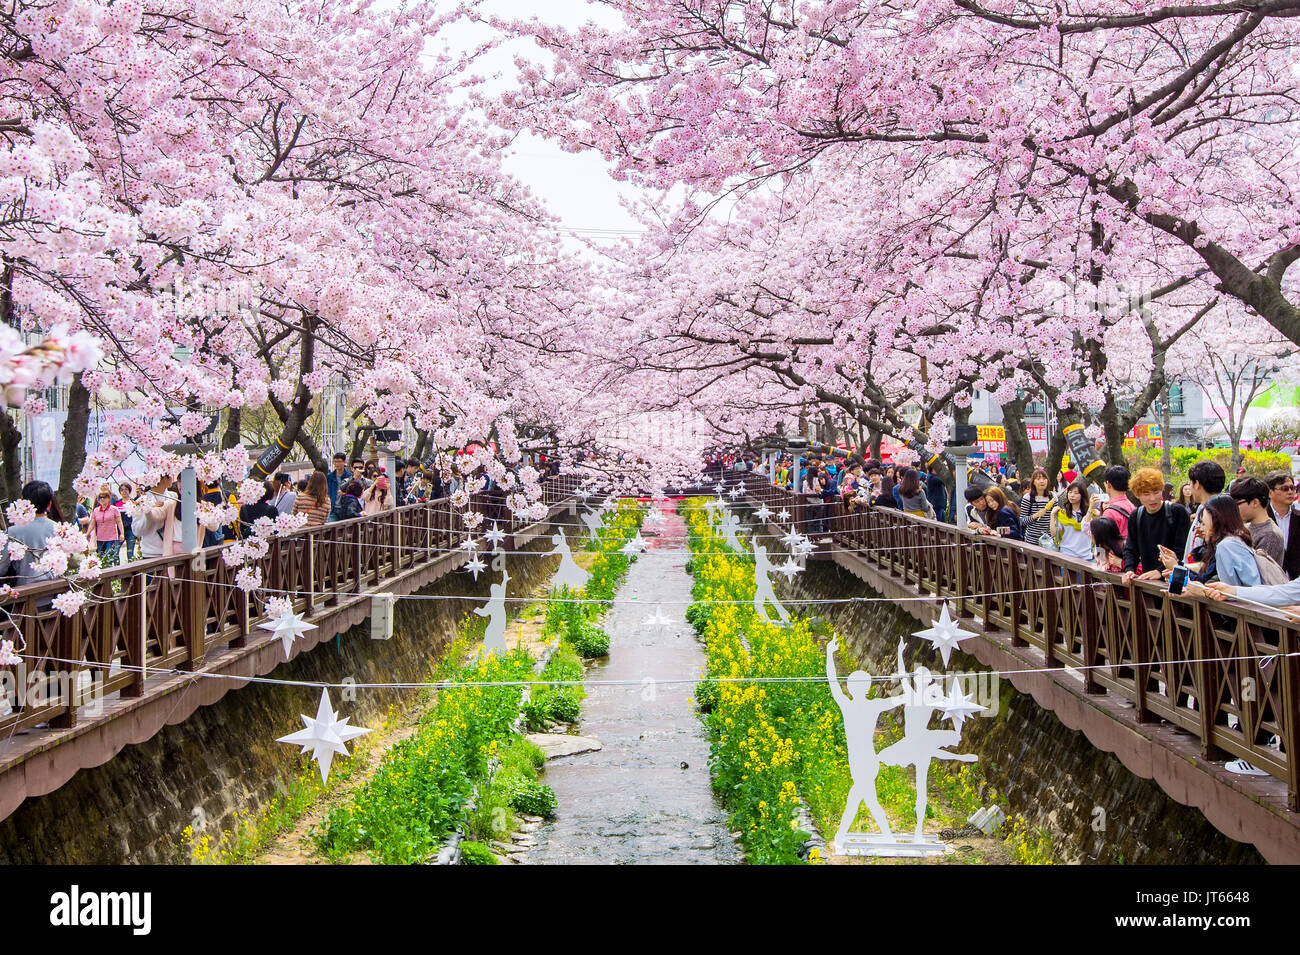 JINHAE, Corea - Abril 2 : Jinhae Gunhangje Festival es el mayor festival de la flor de la cereza en Corea.Los turistas tomando fotos del hermoso paisaje aro Foto de stock